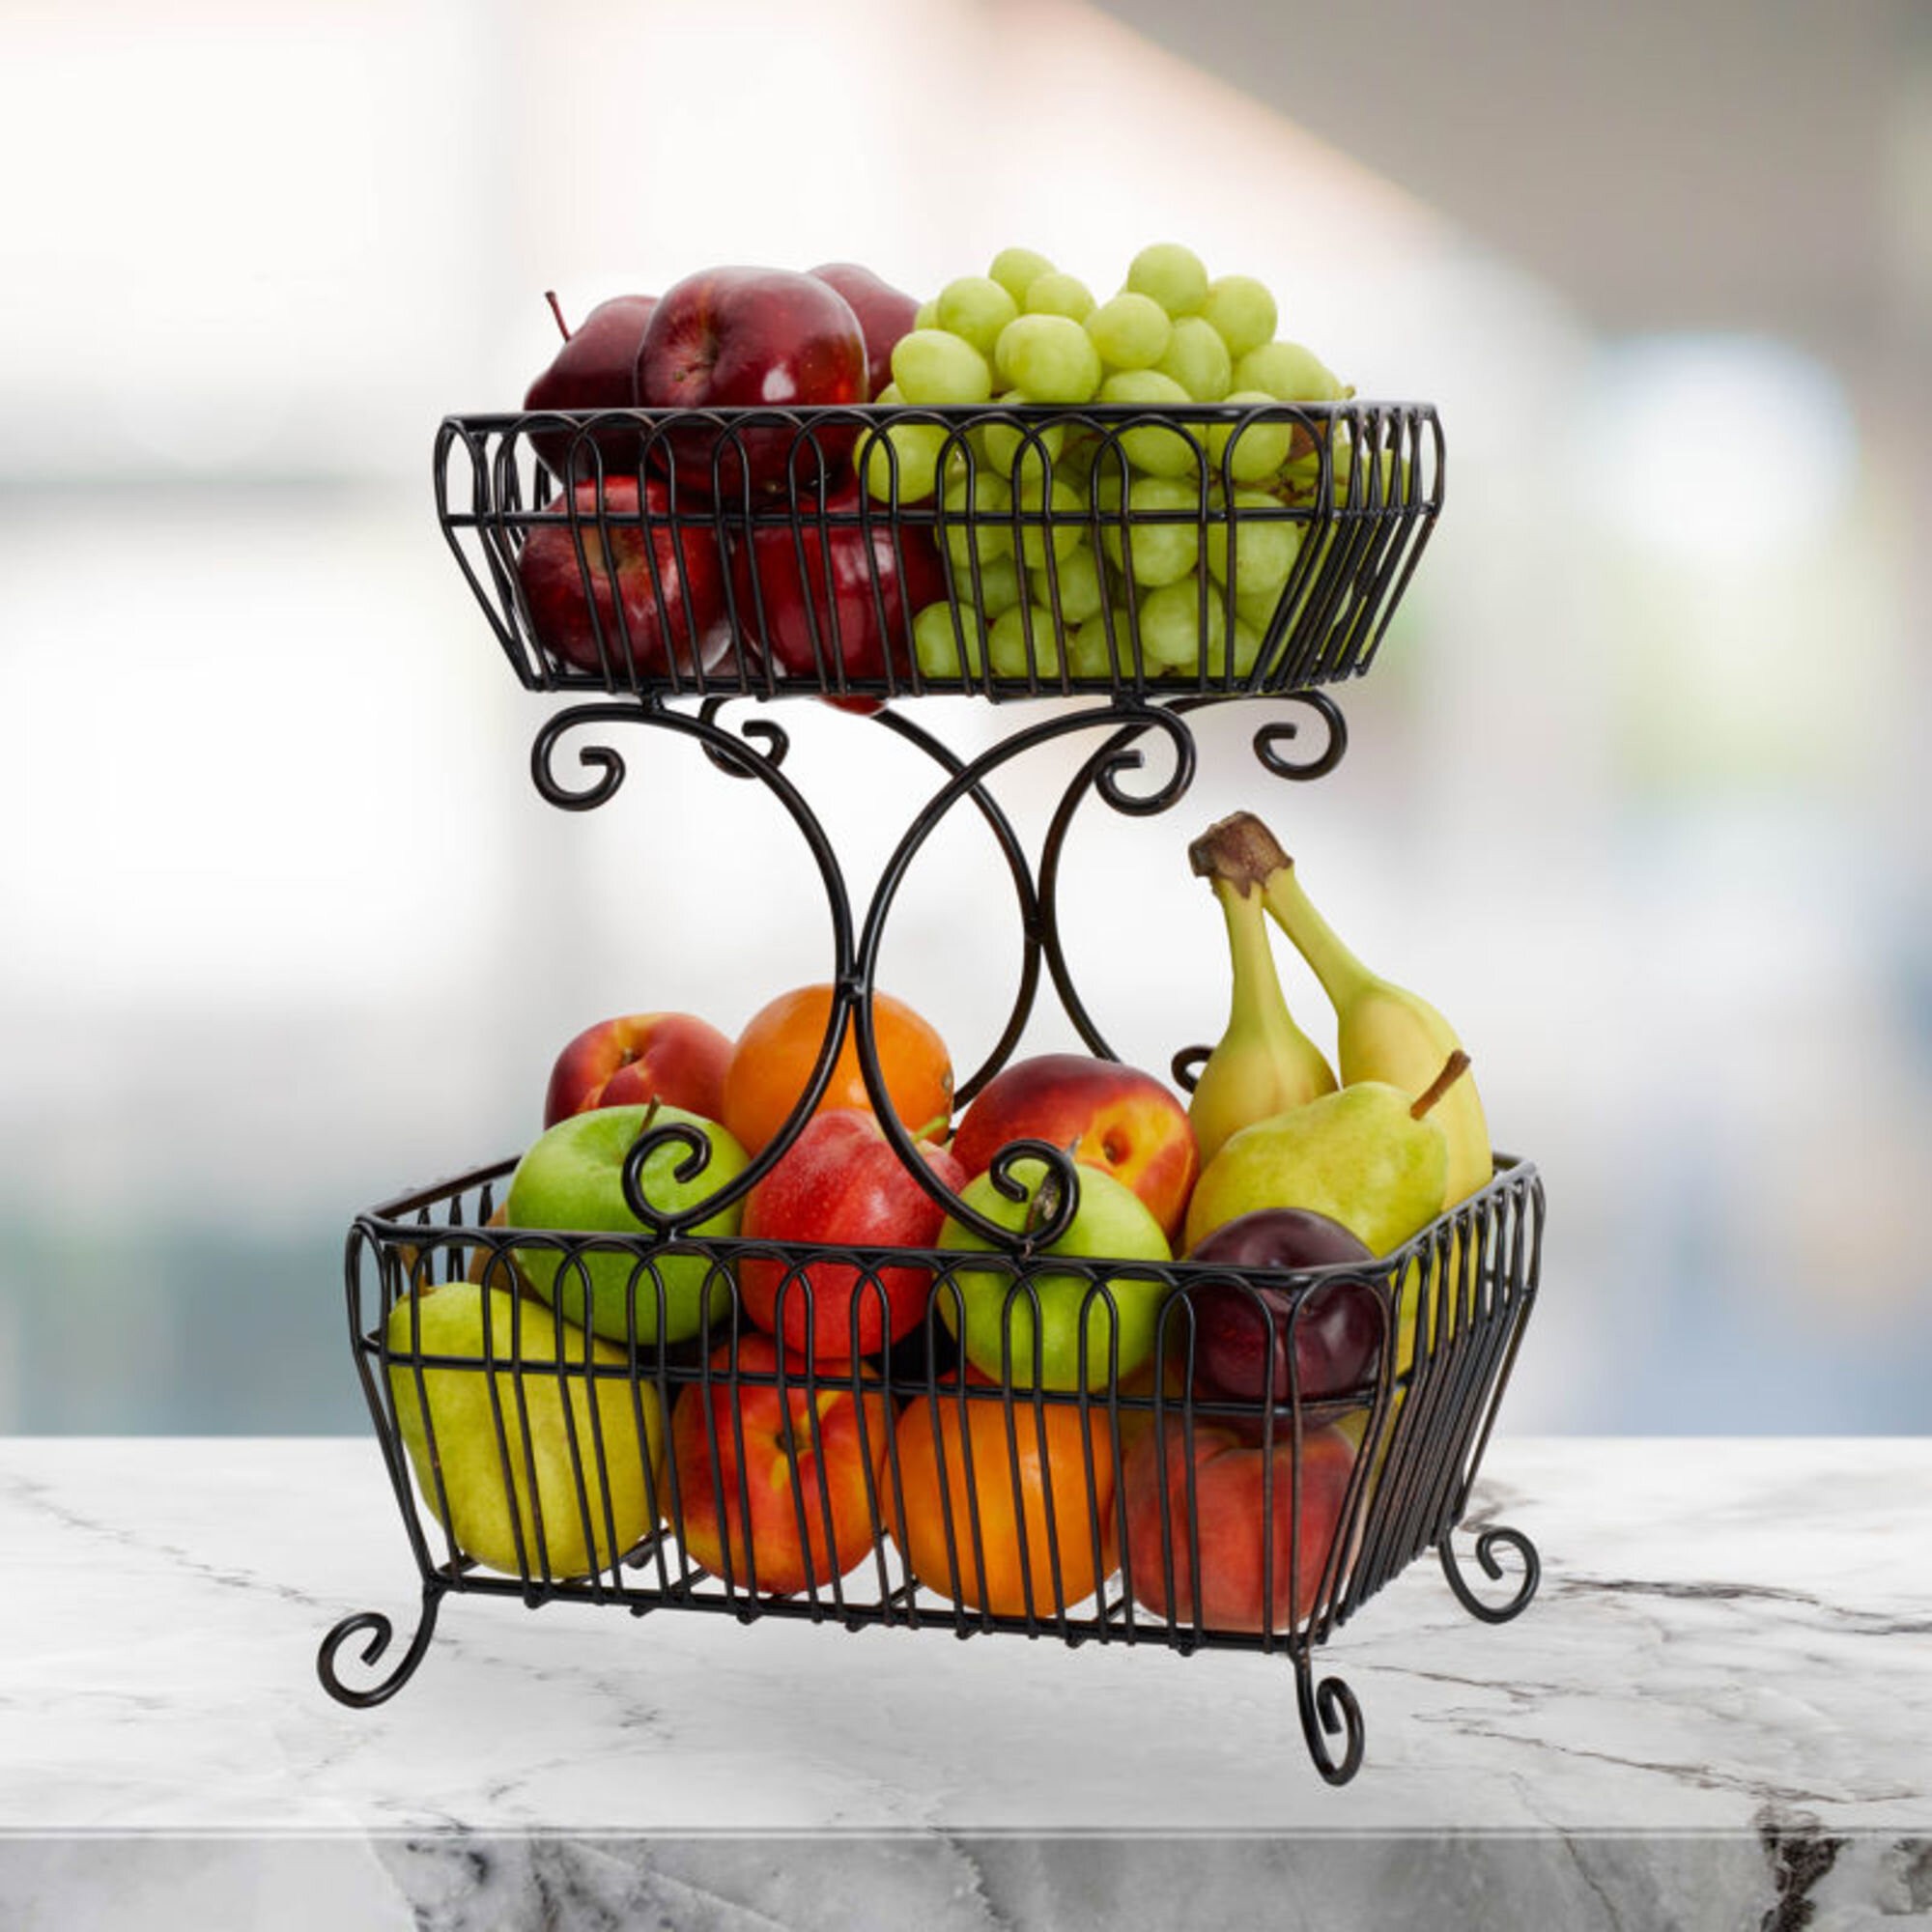 Design Fruit Basket Chrome Plated Fruit Bowl Fruit Basket Metal Basket Decorative Bowl 